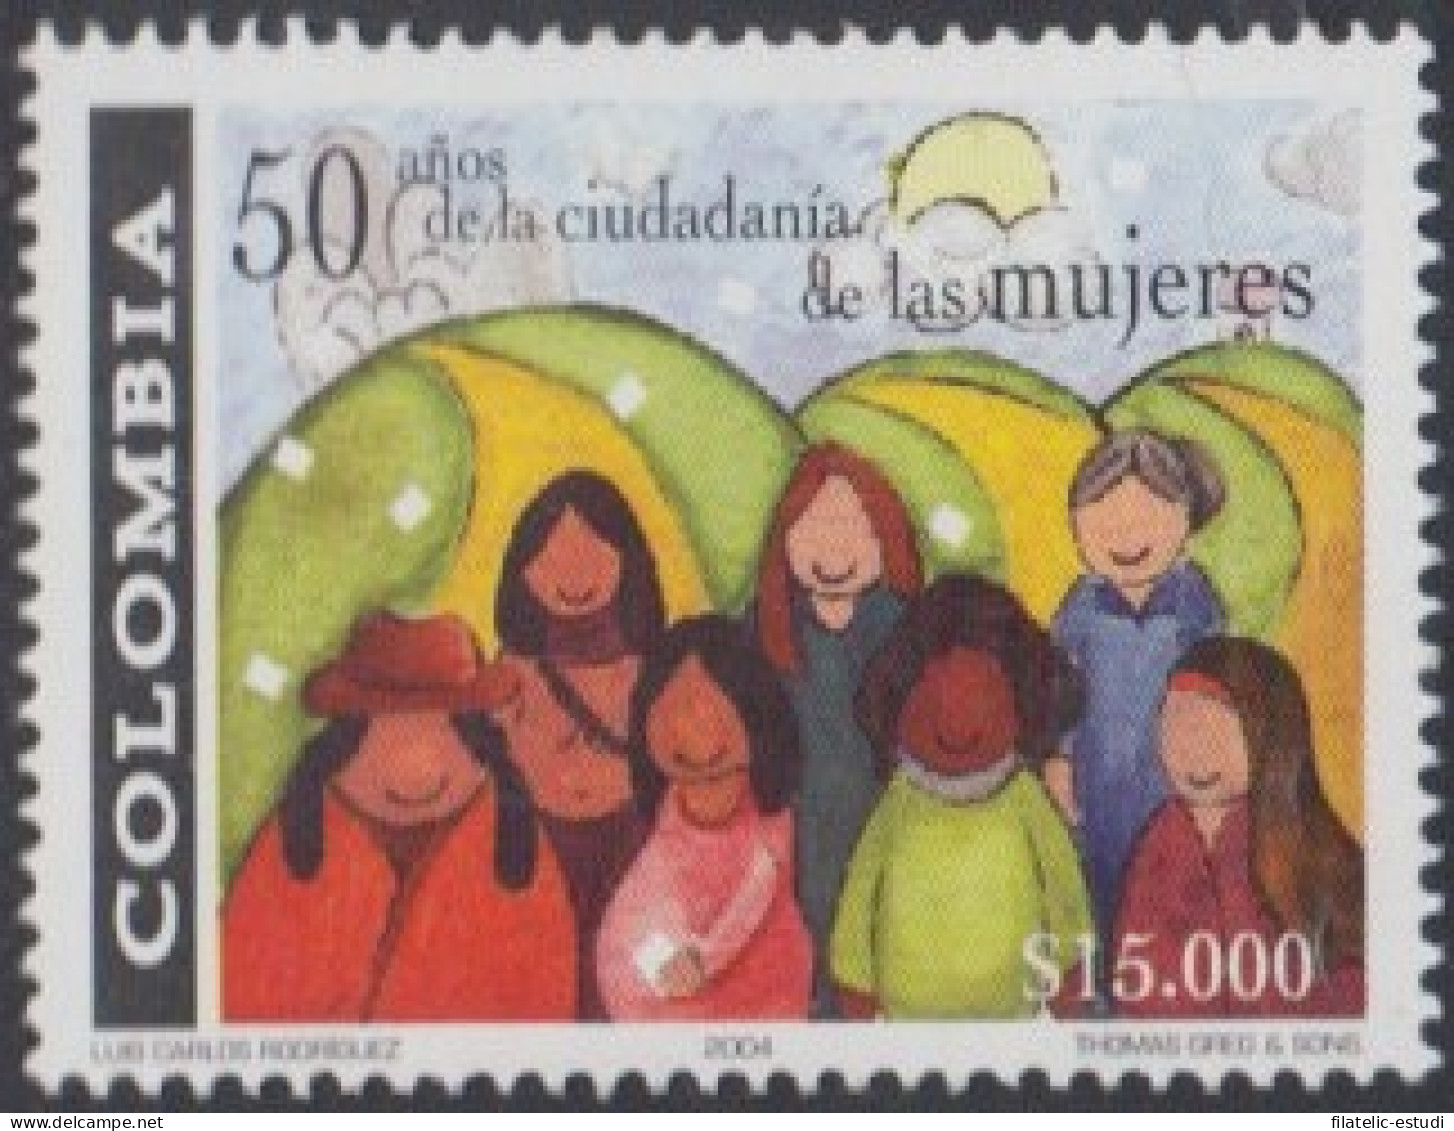 Colombia 1305 2004 50 Años De La Ciudadanía De La Mujer Colombiana MNH - Colombia